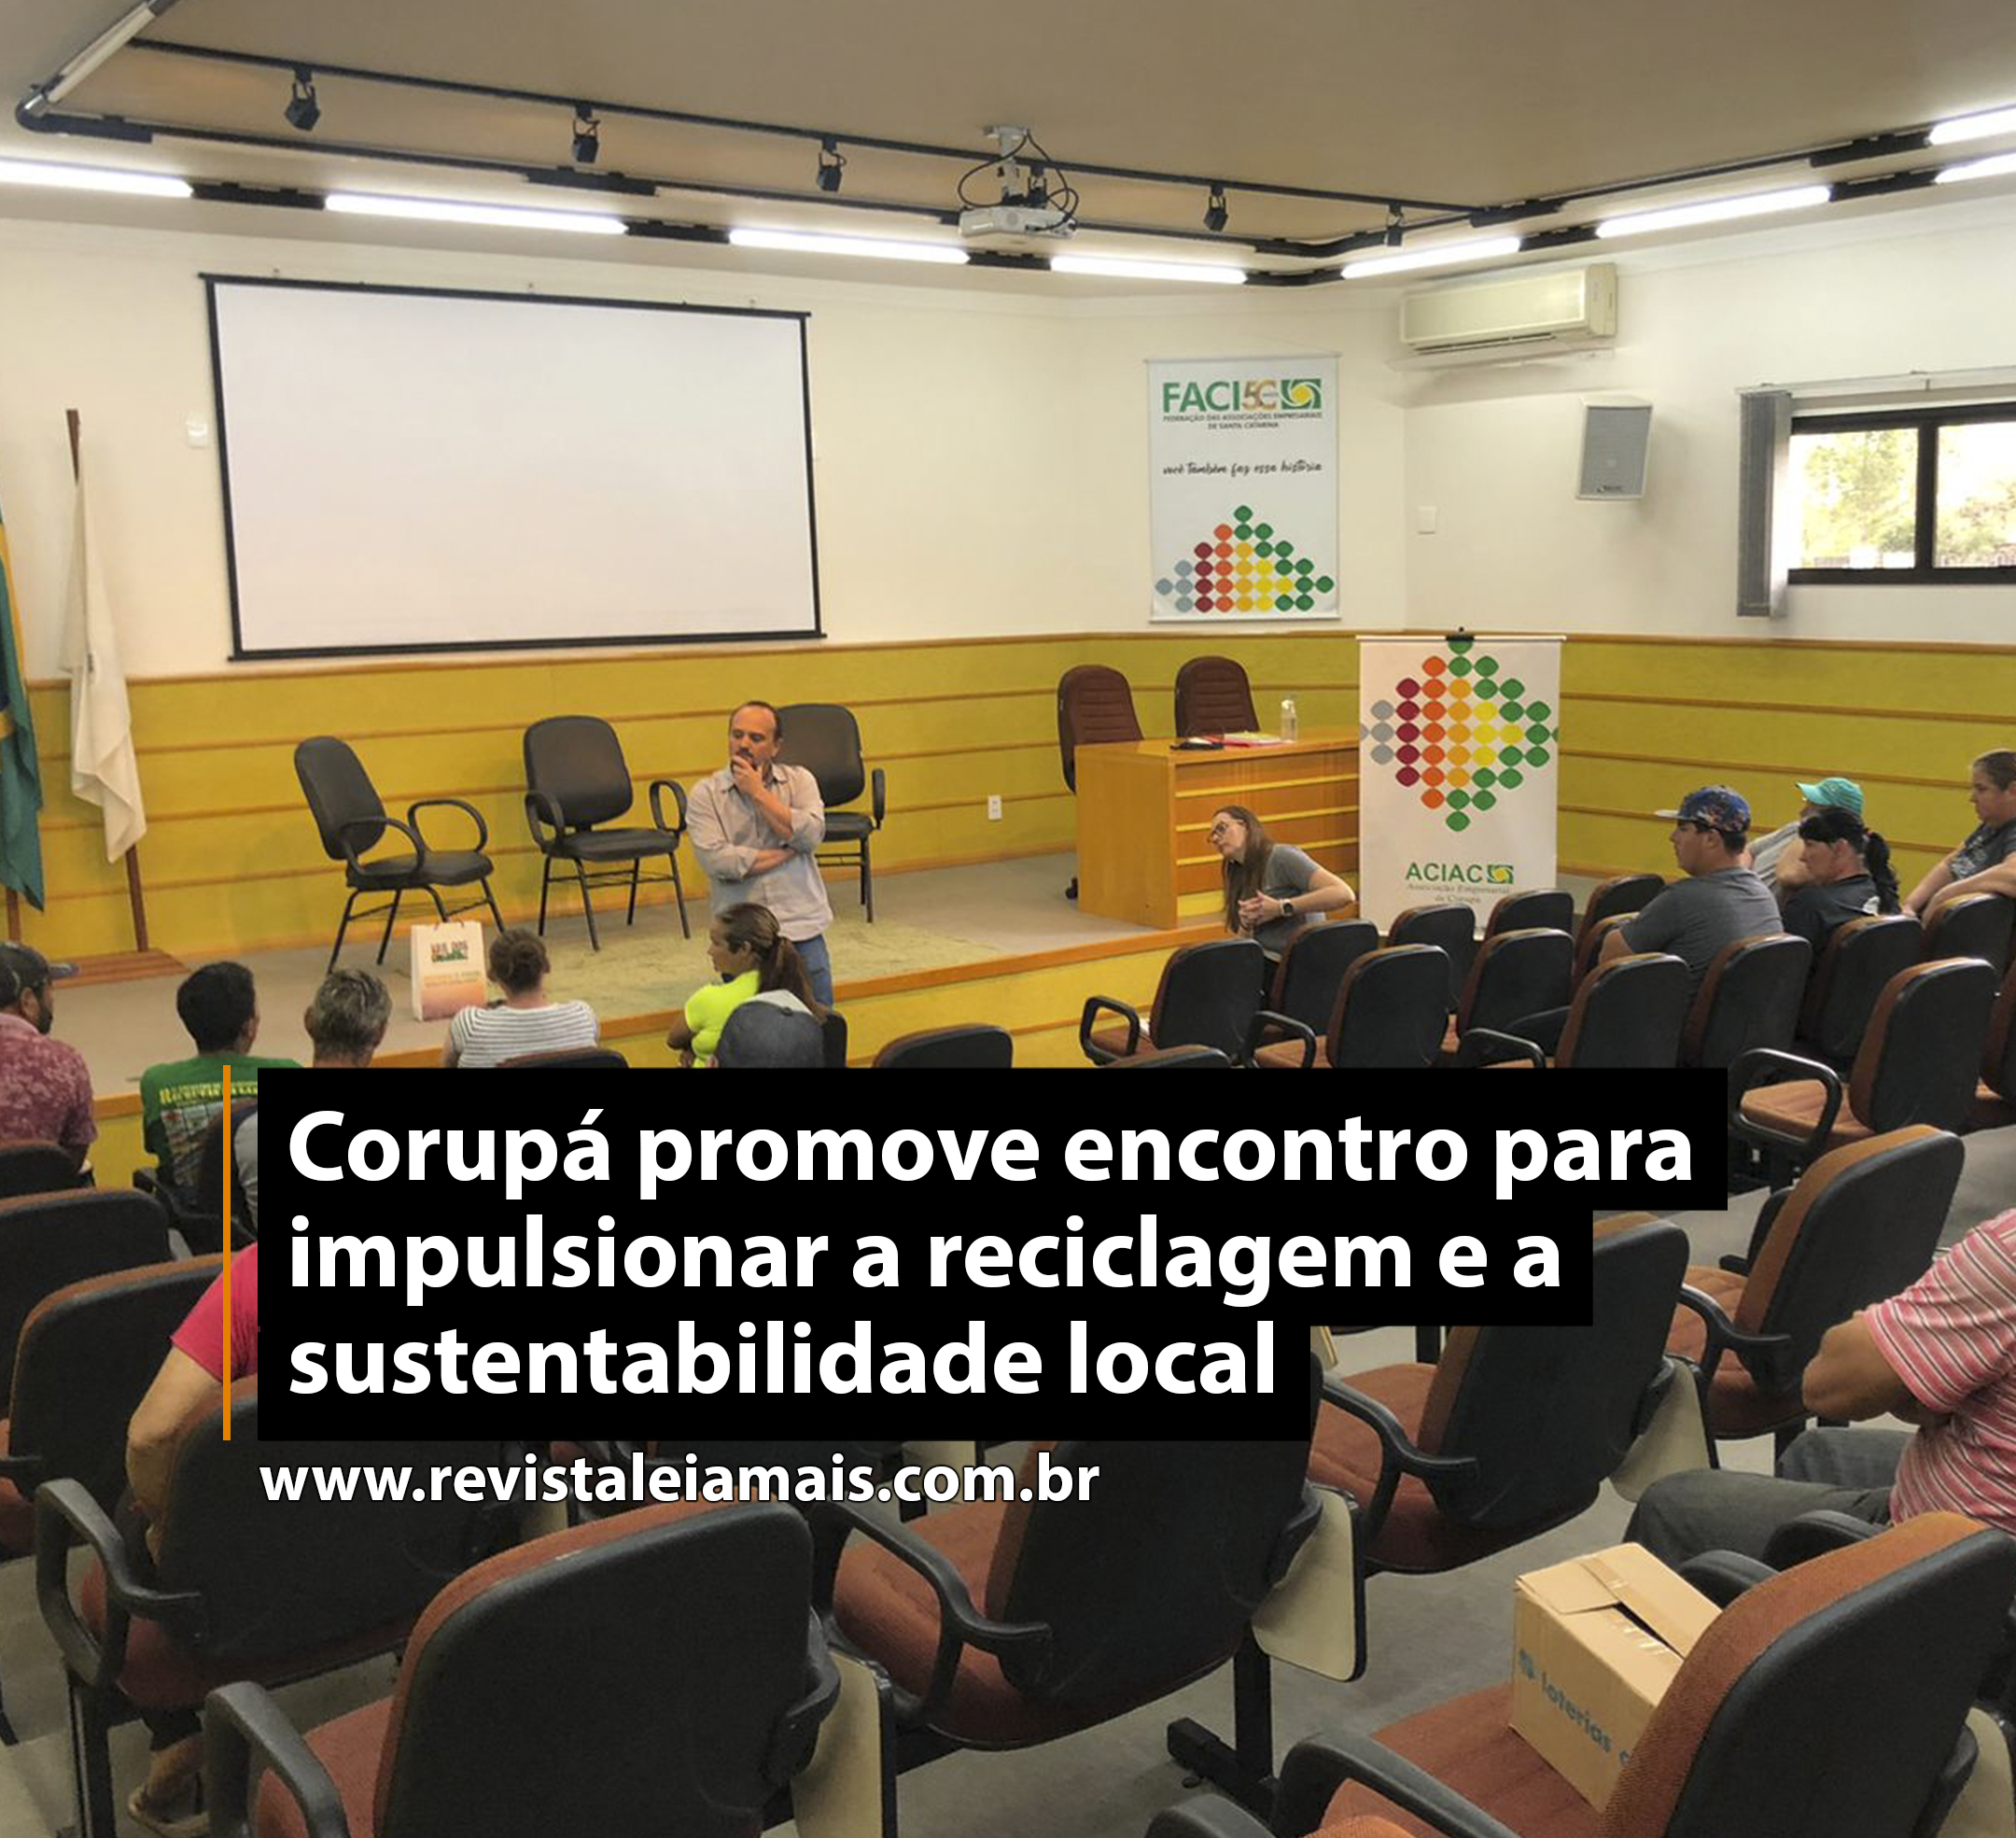 Corupá promove encontro para impulsionar a reciclagem e a sustentabilidade local